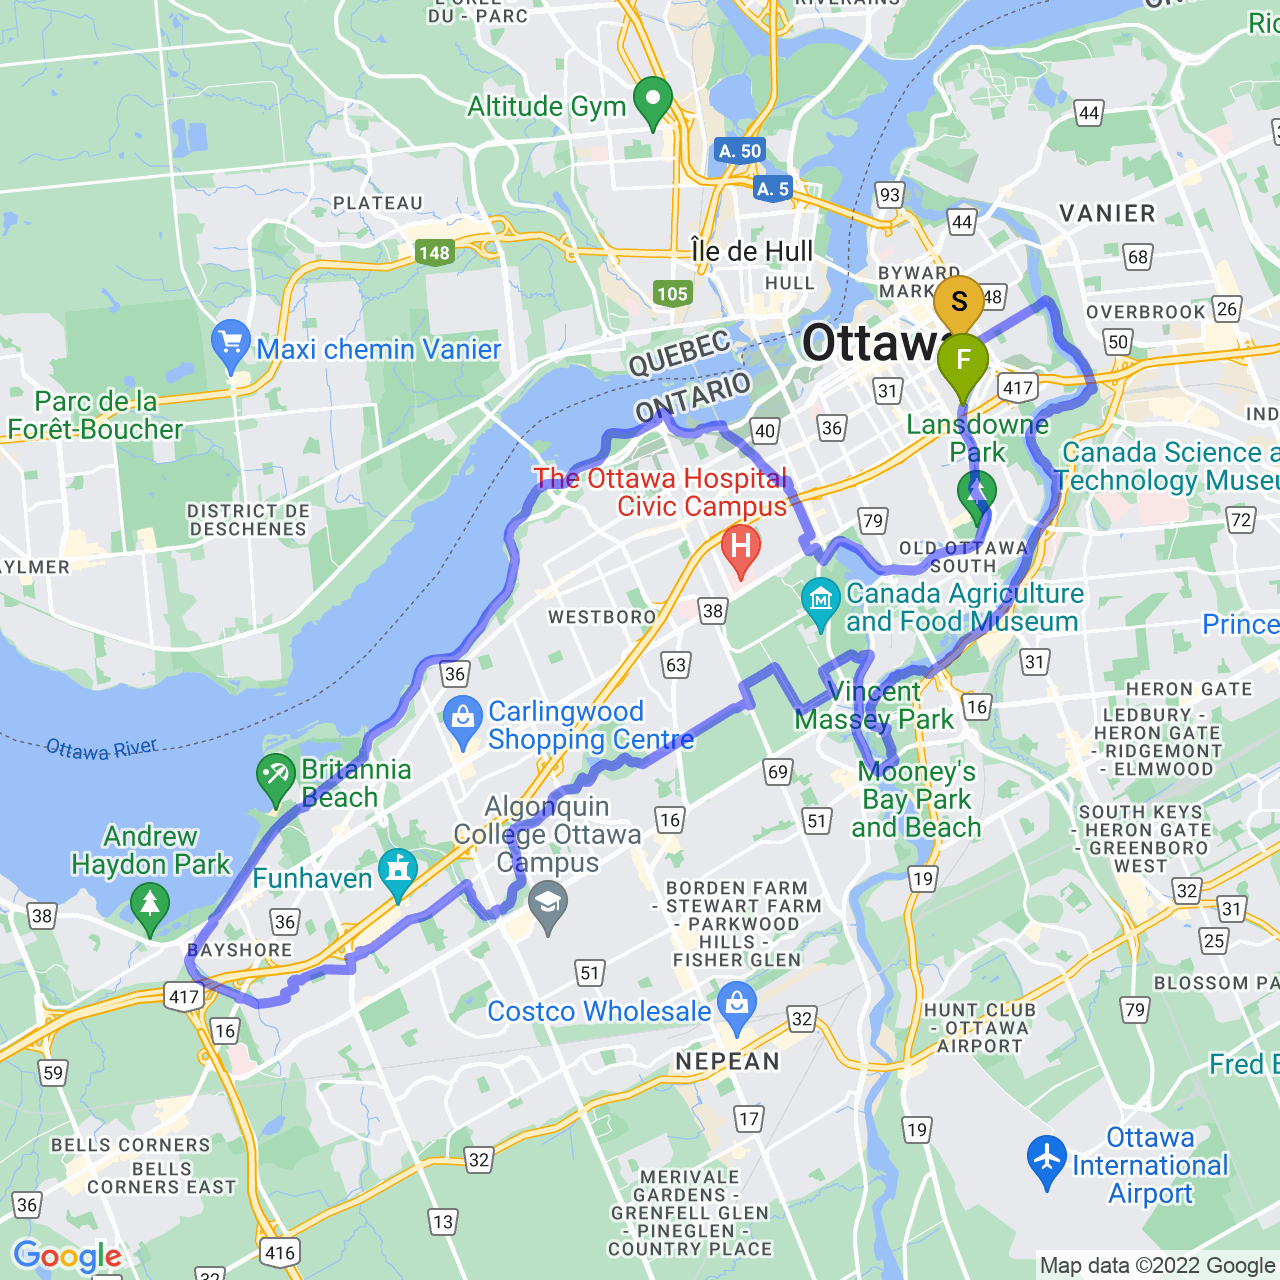 map of Fall loop around Ottawa